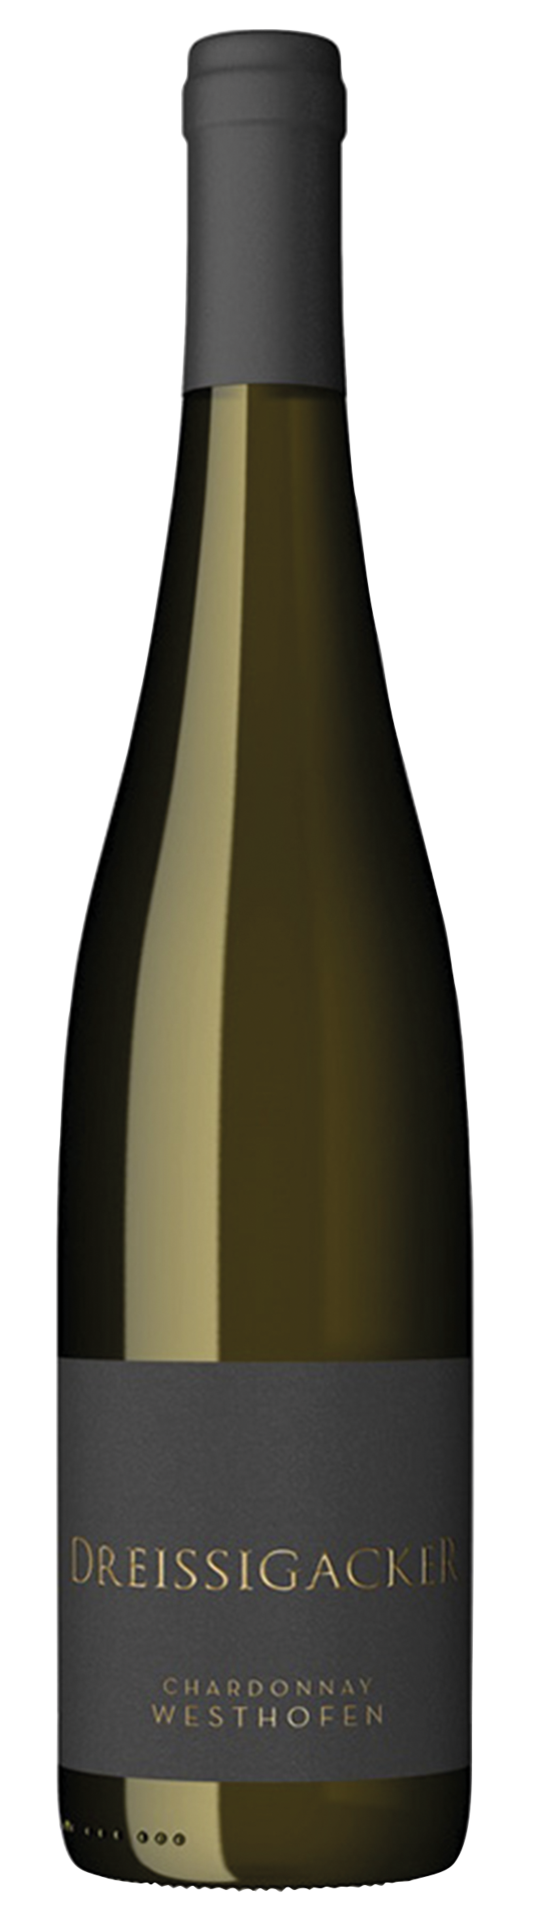 Westhofener Chardonnay - 2021